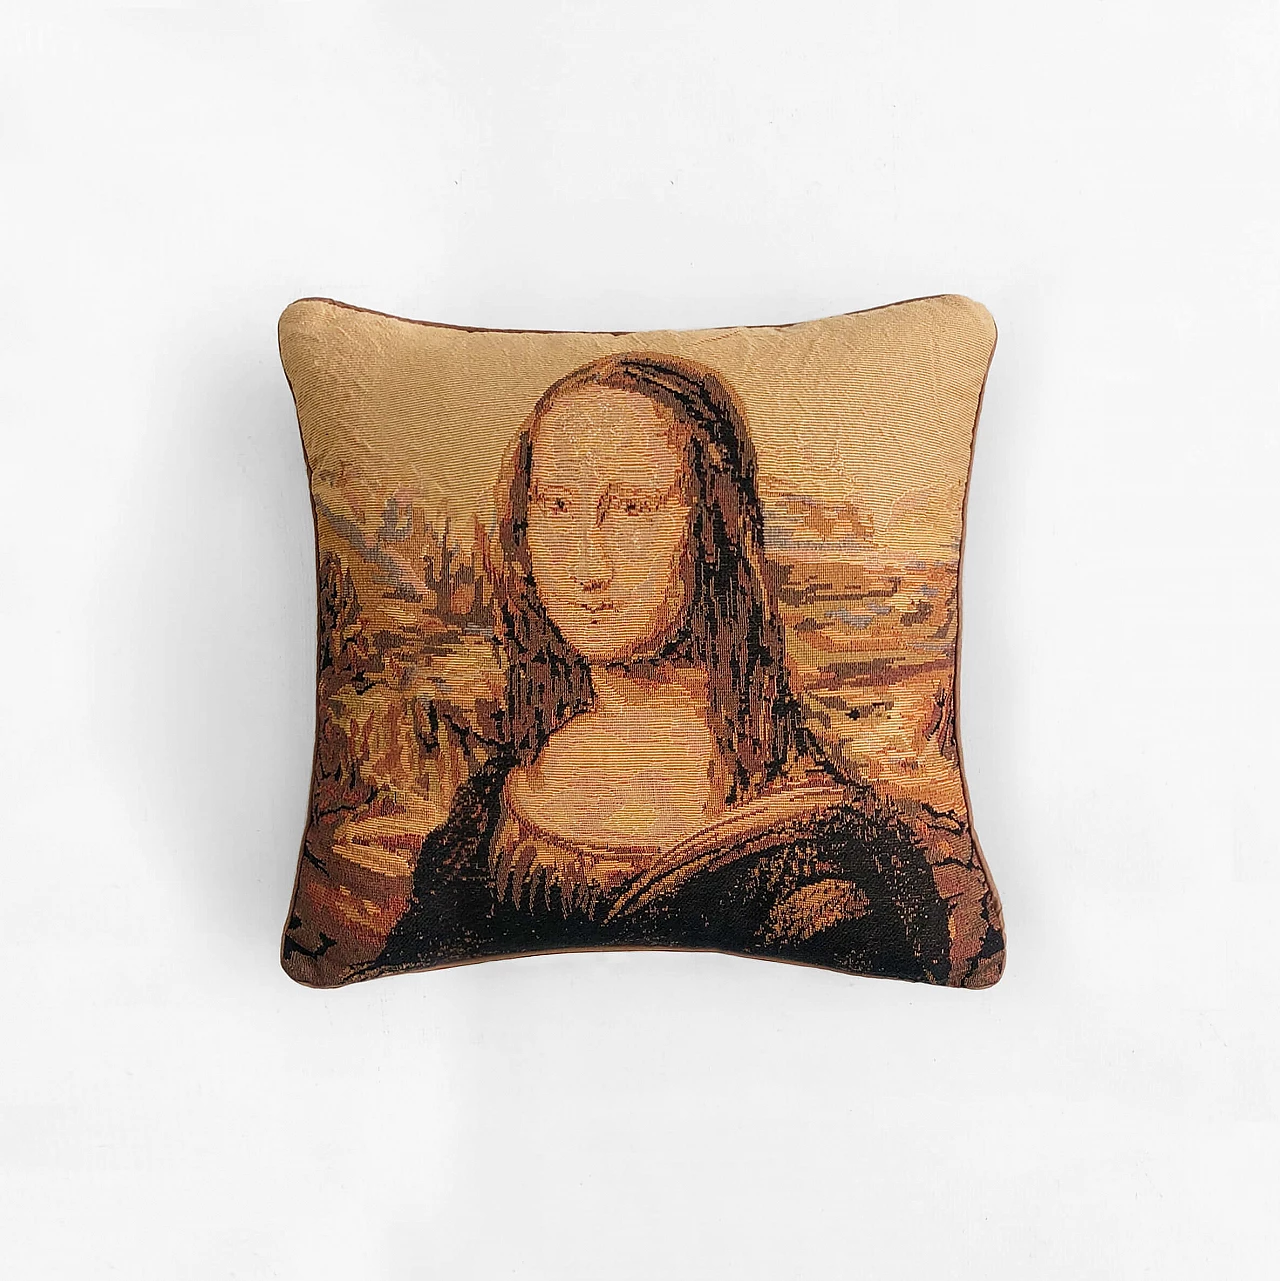 Mona Lisa souvenir cushion, 1970s 1323842